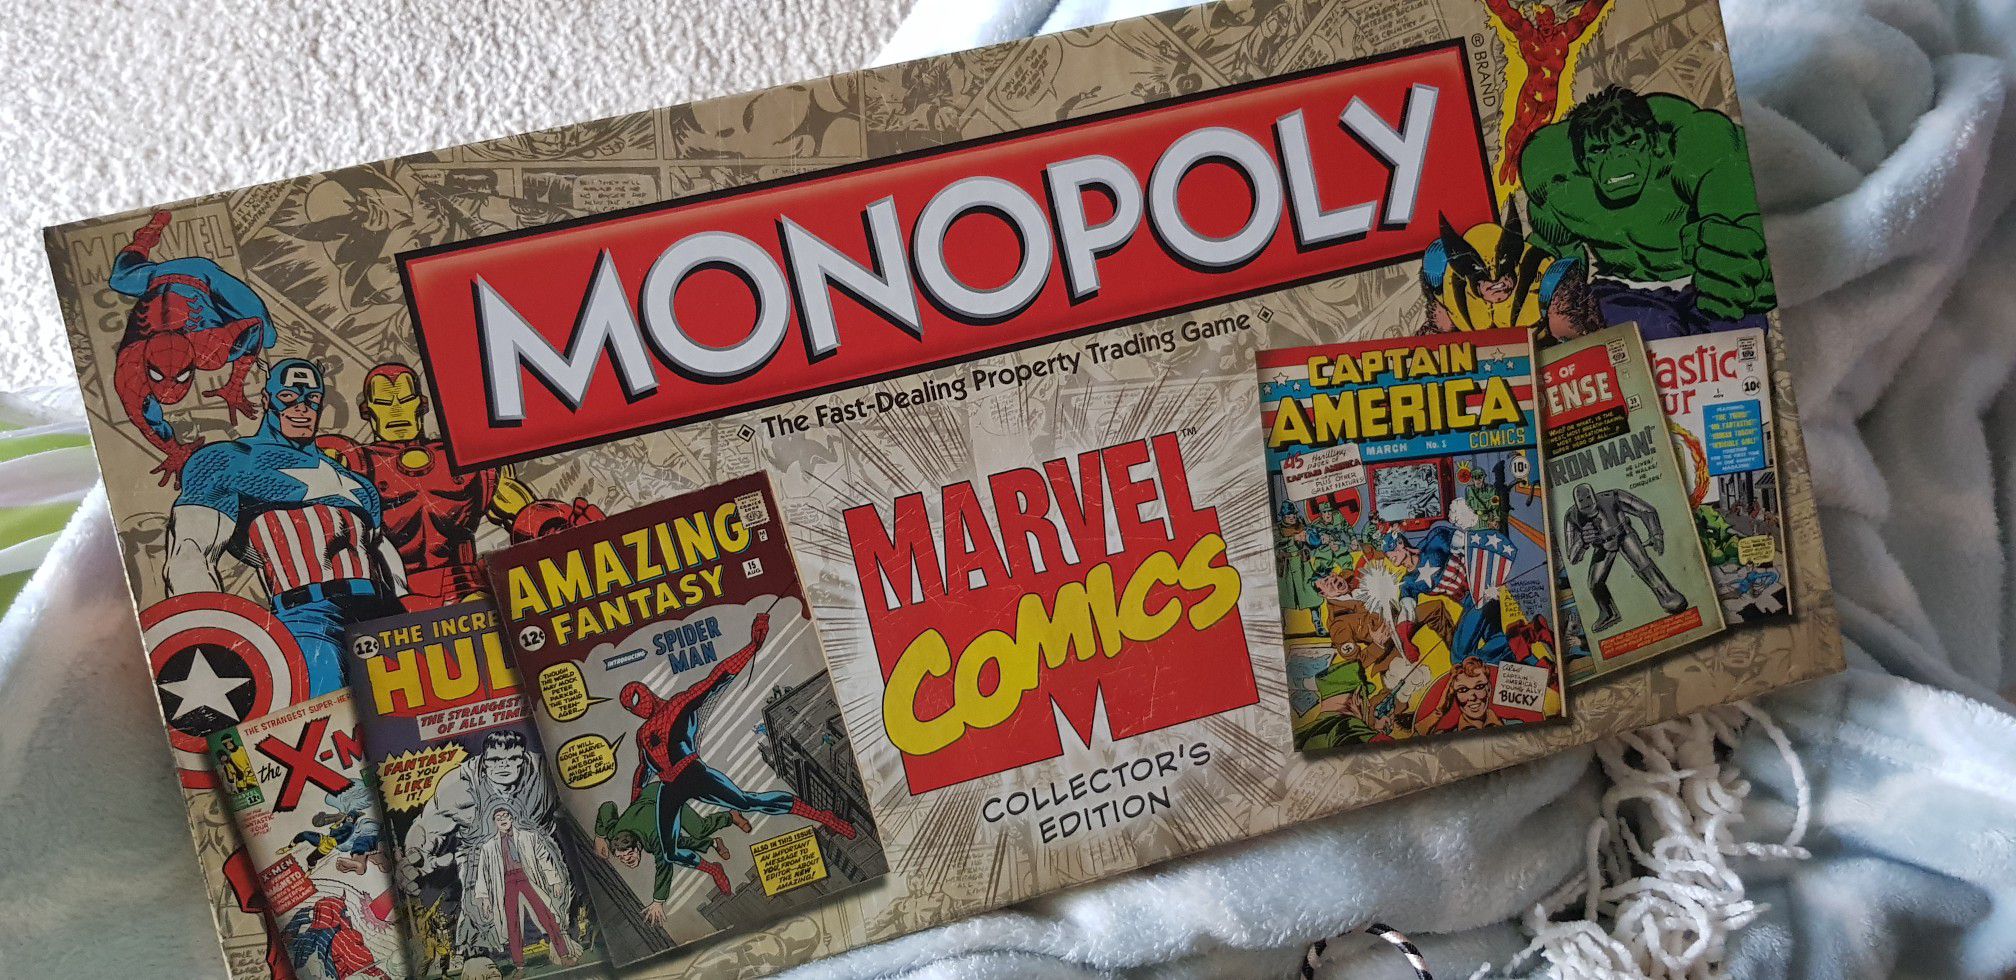 Monopoly marvel comics